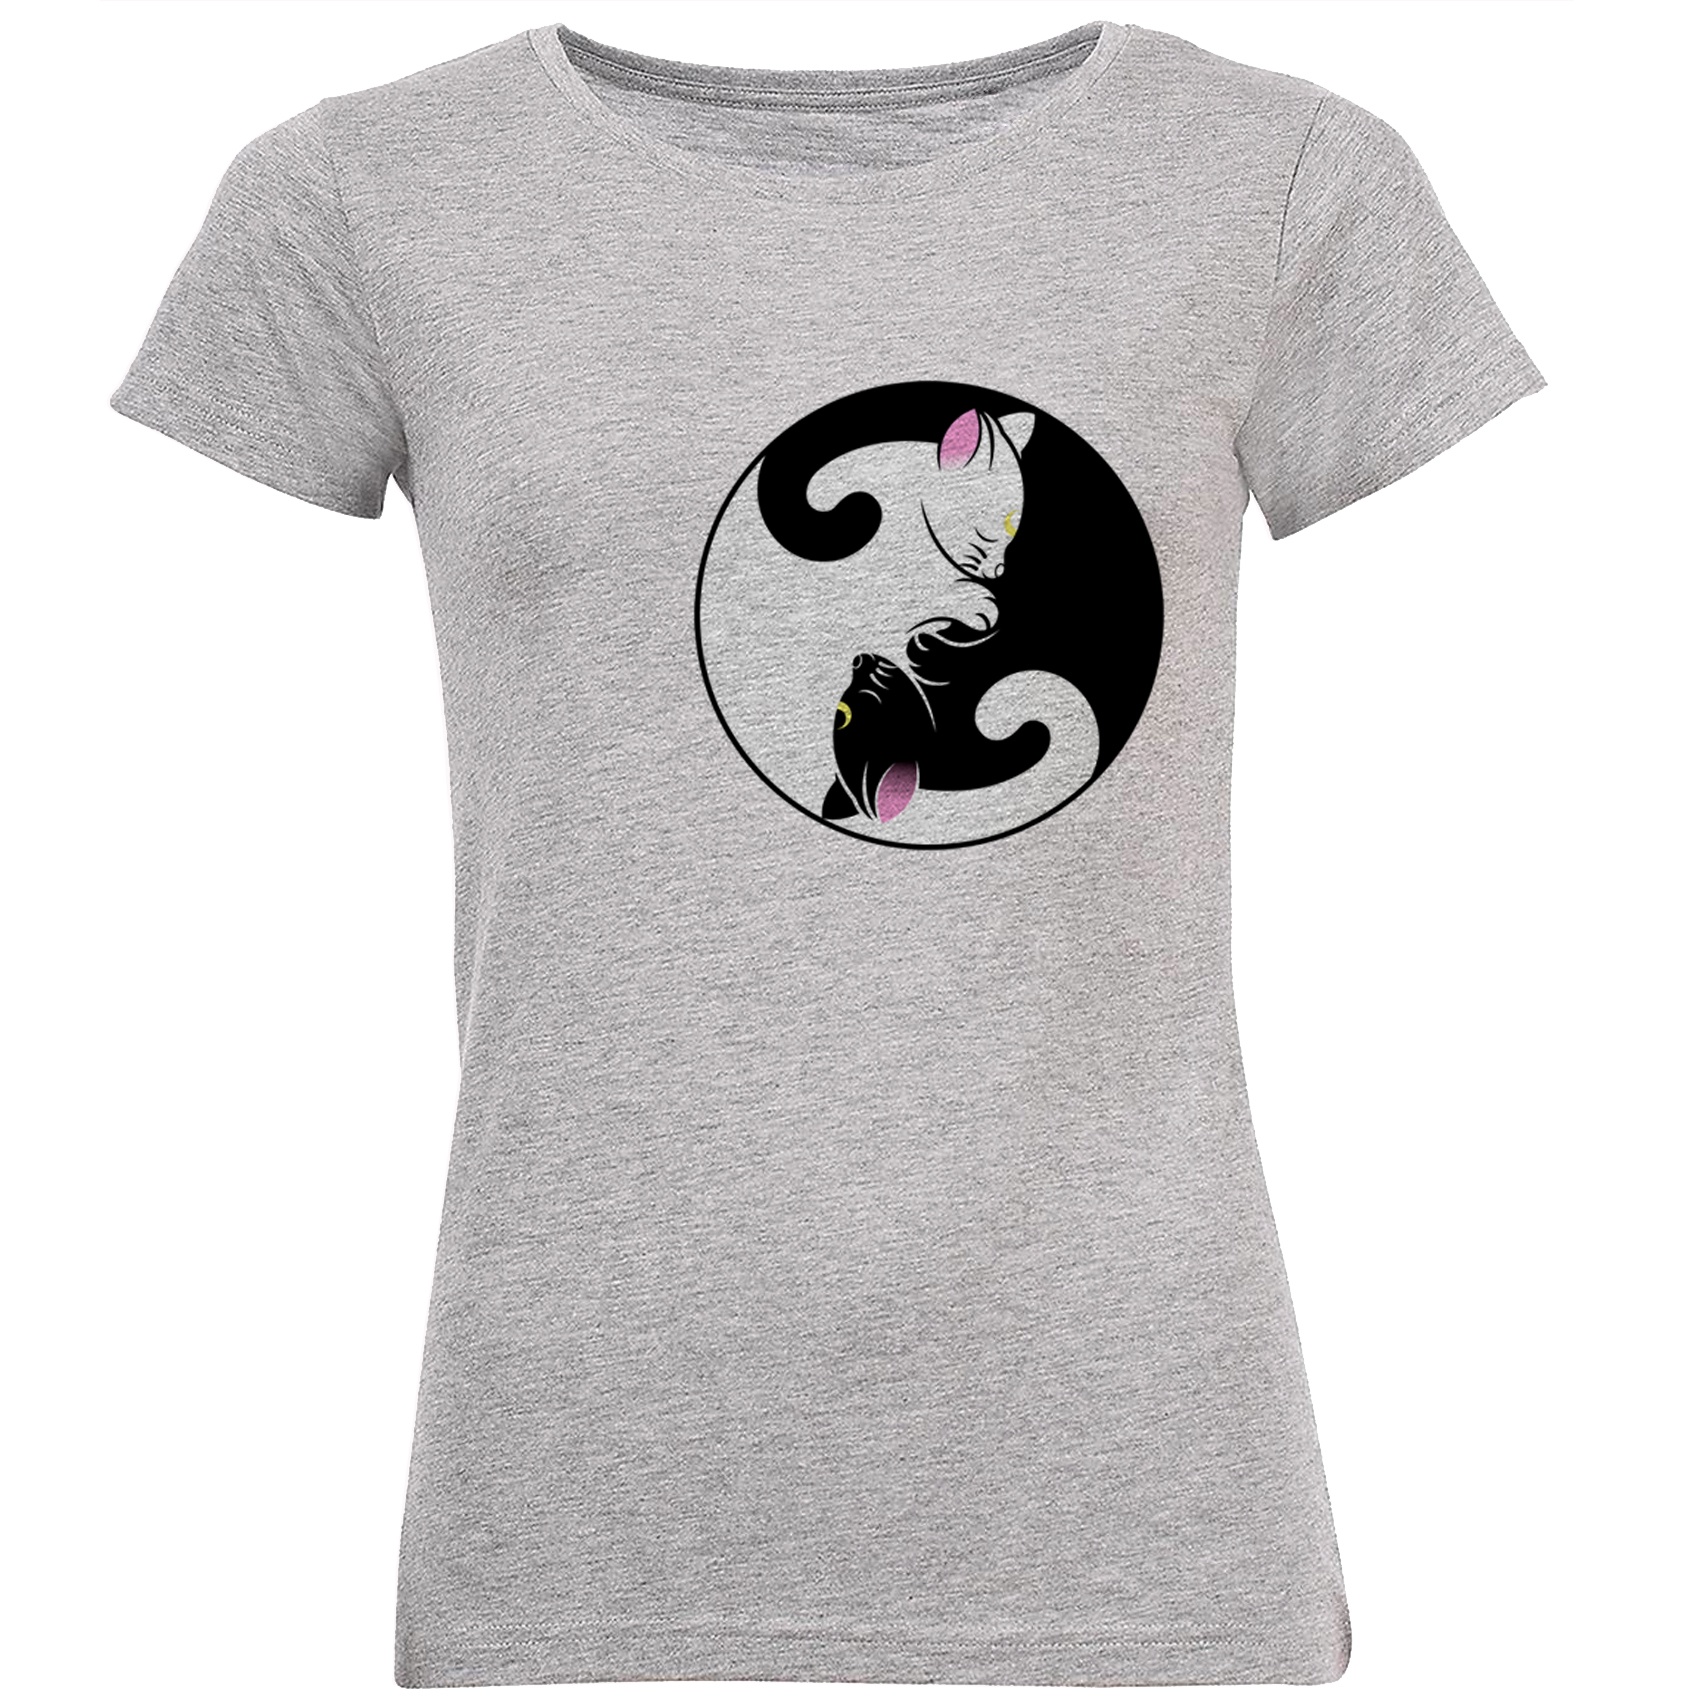 تی شرت نه طرح گربه های  سیاه و سفید کد B166